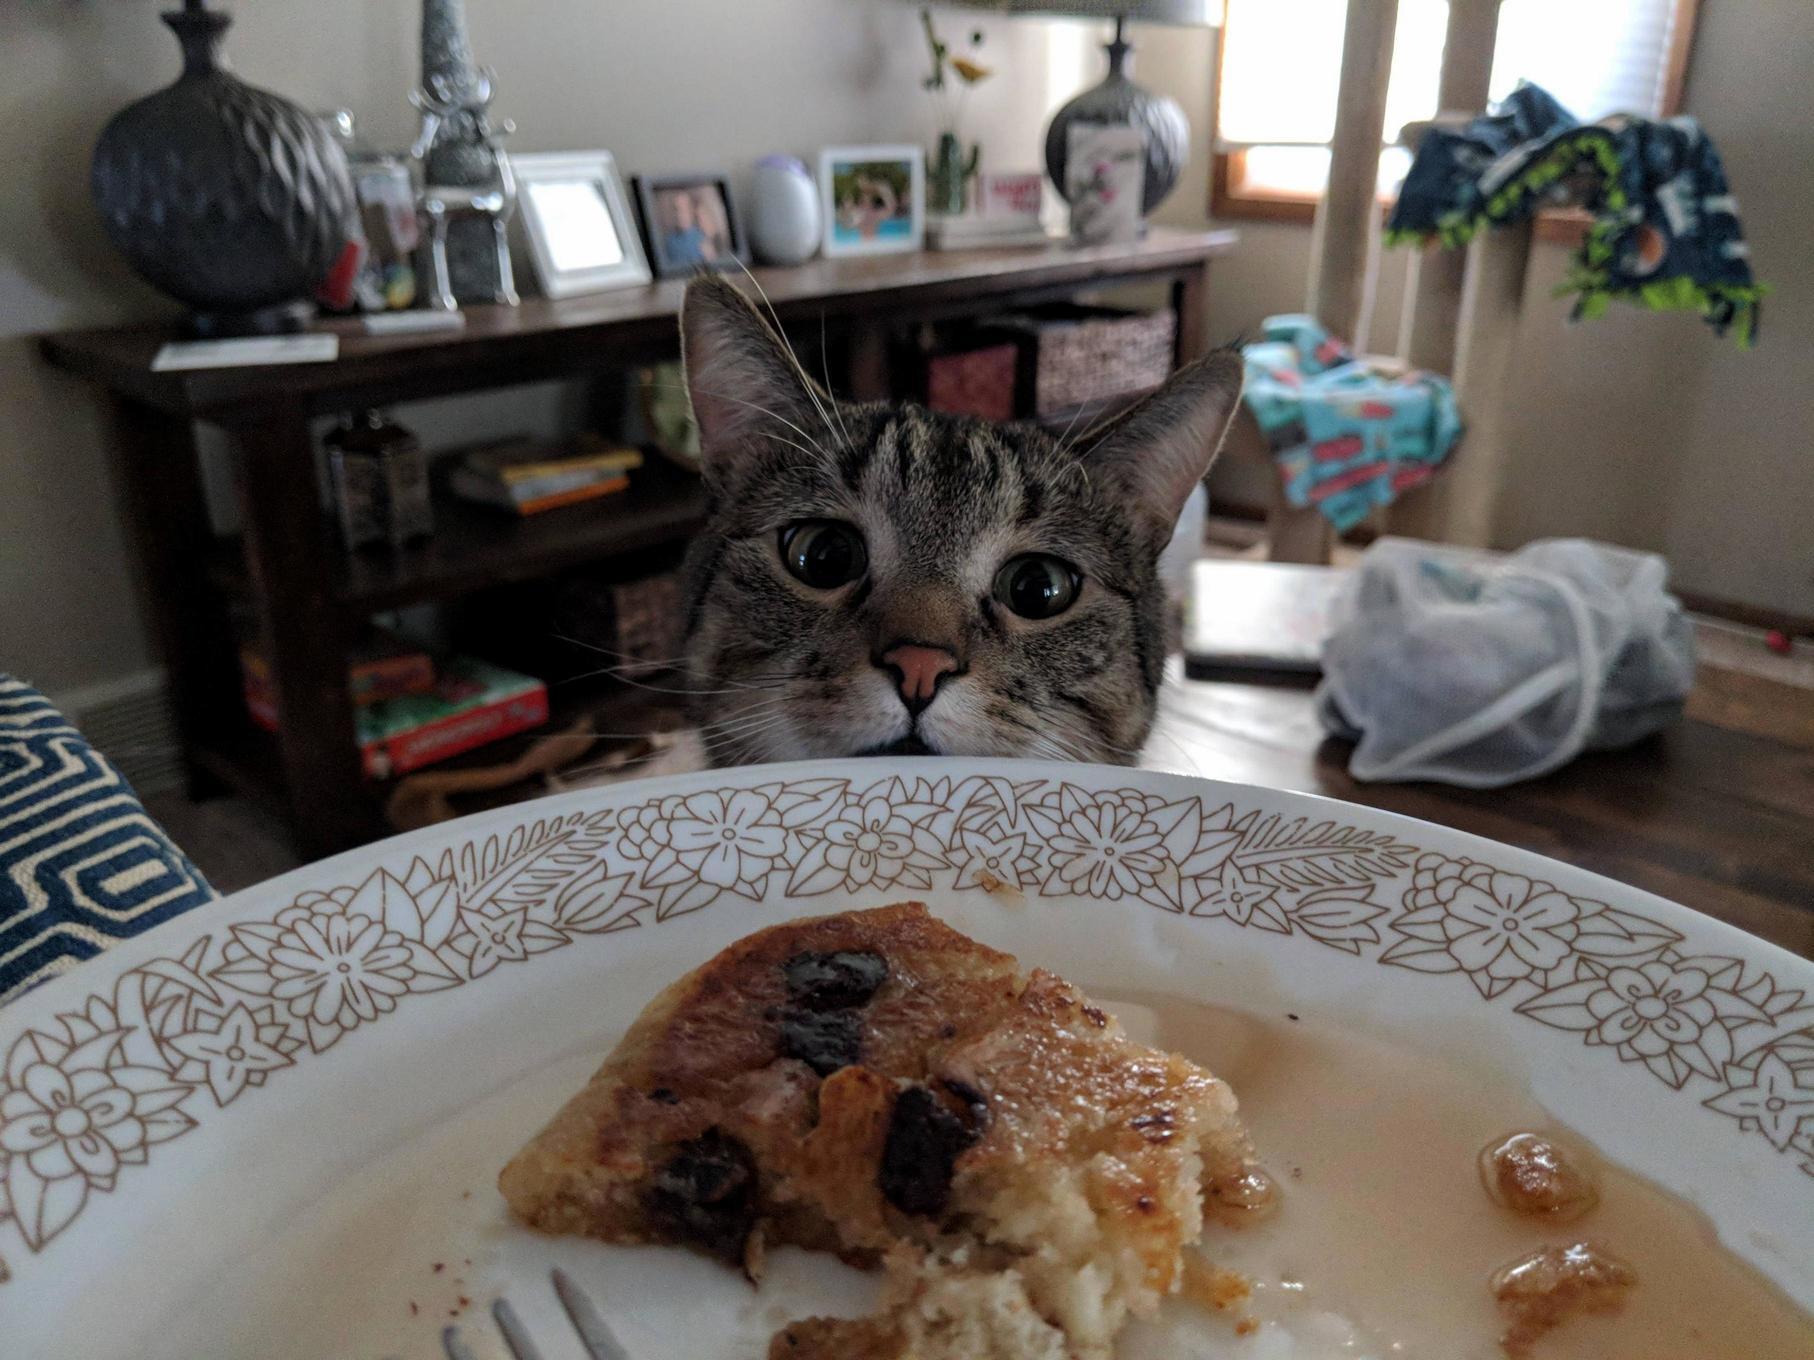 Mmm pancakes!